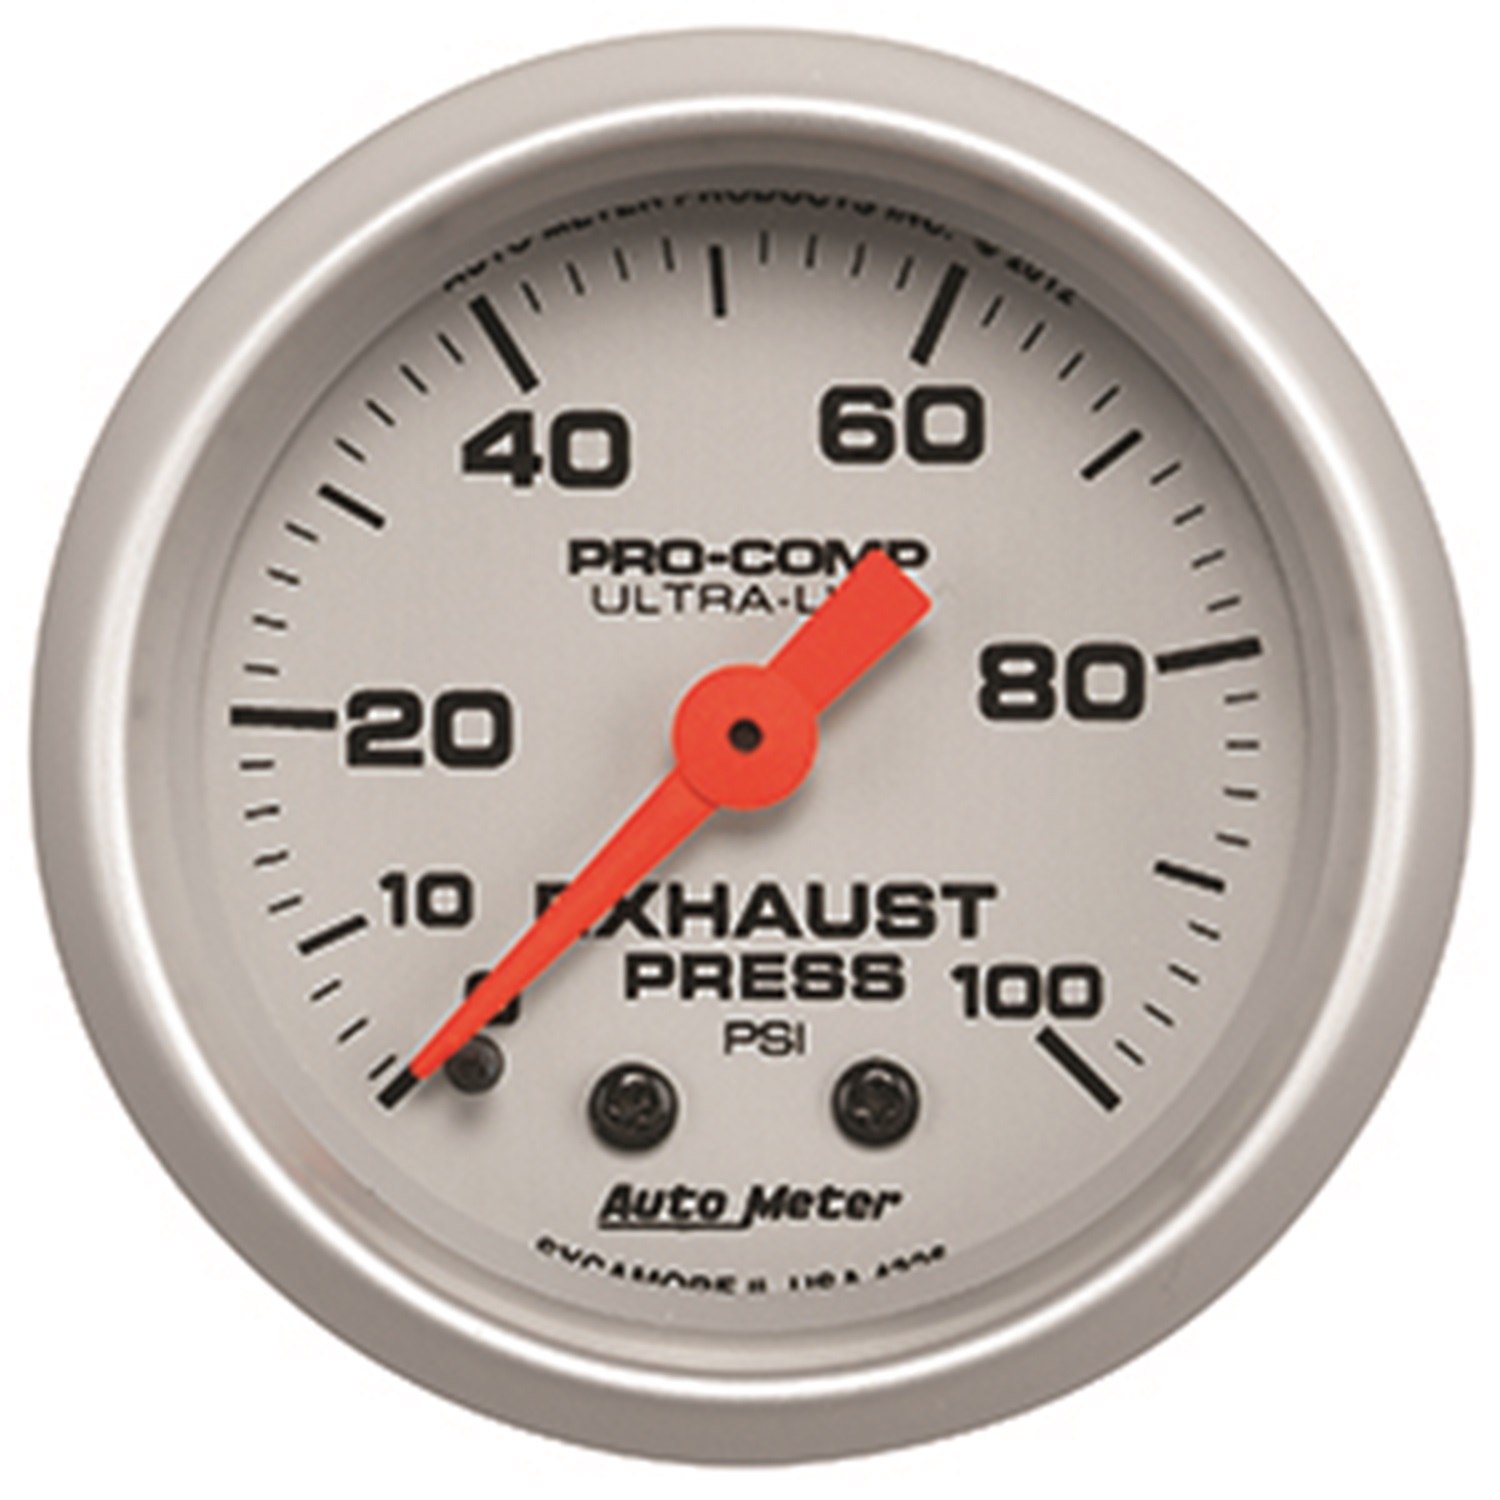 Auto Meter Auto Meter 4326 Ultra-Lite; Mechanical Exhaust Pressure Gauge